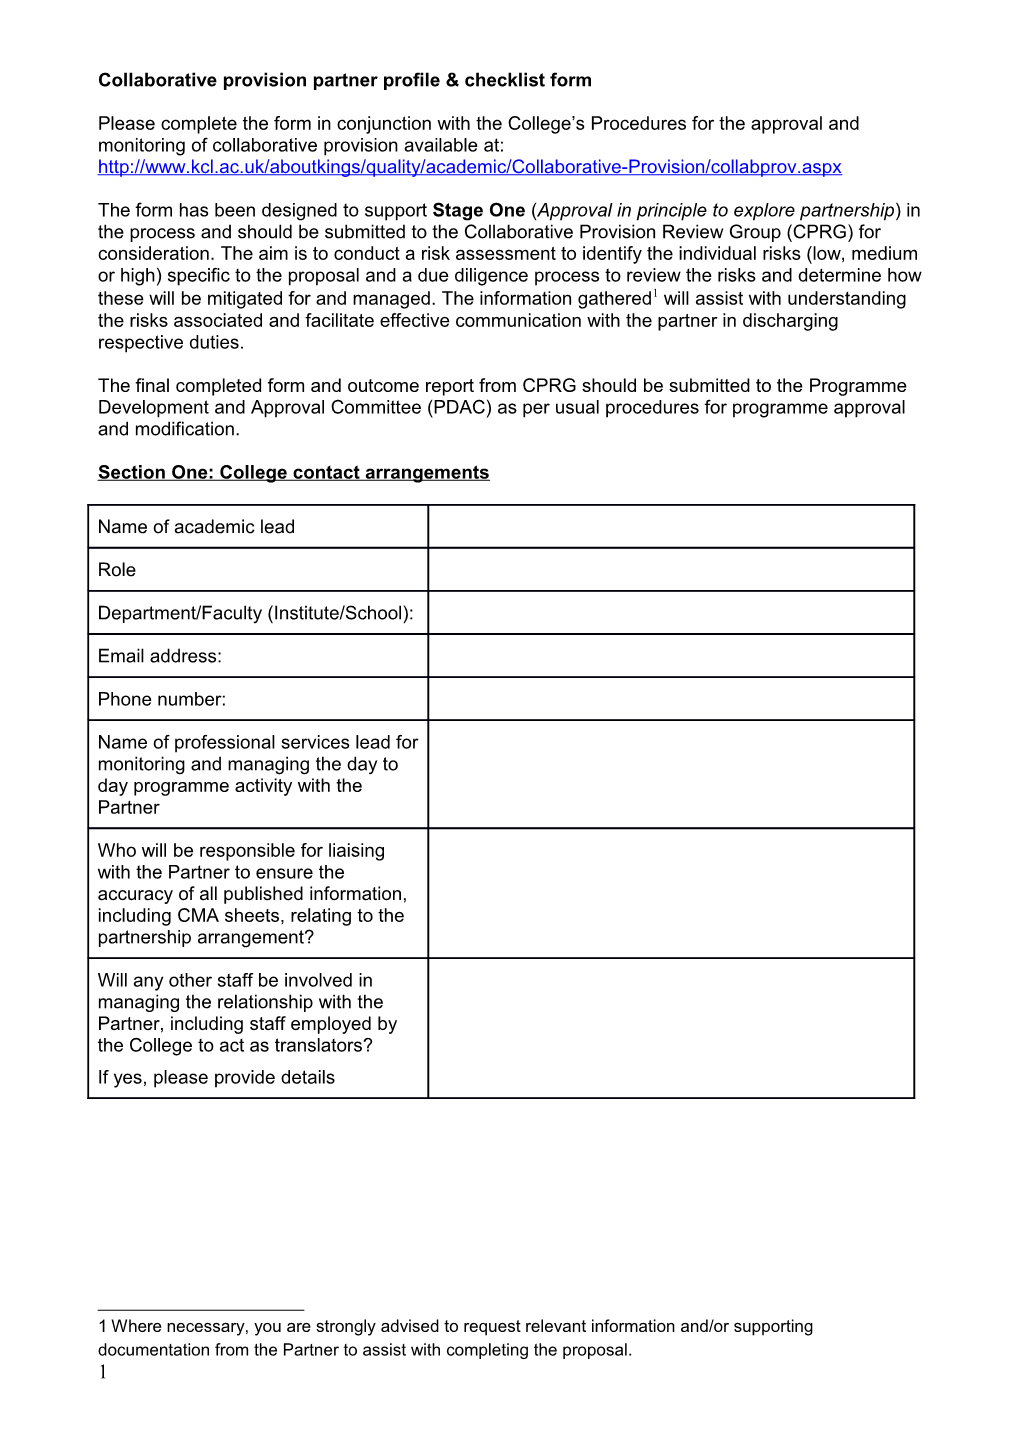 Collaborative Provision Partner Profile & Checklist Form